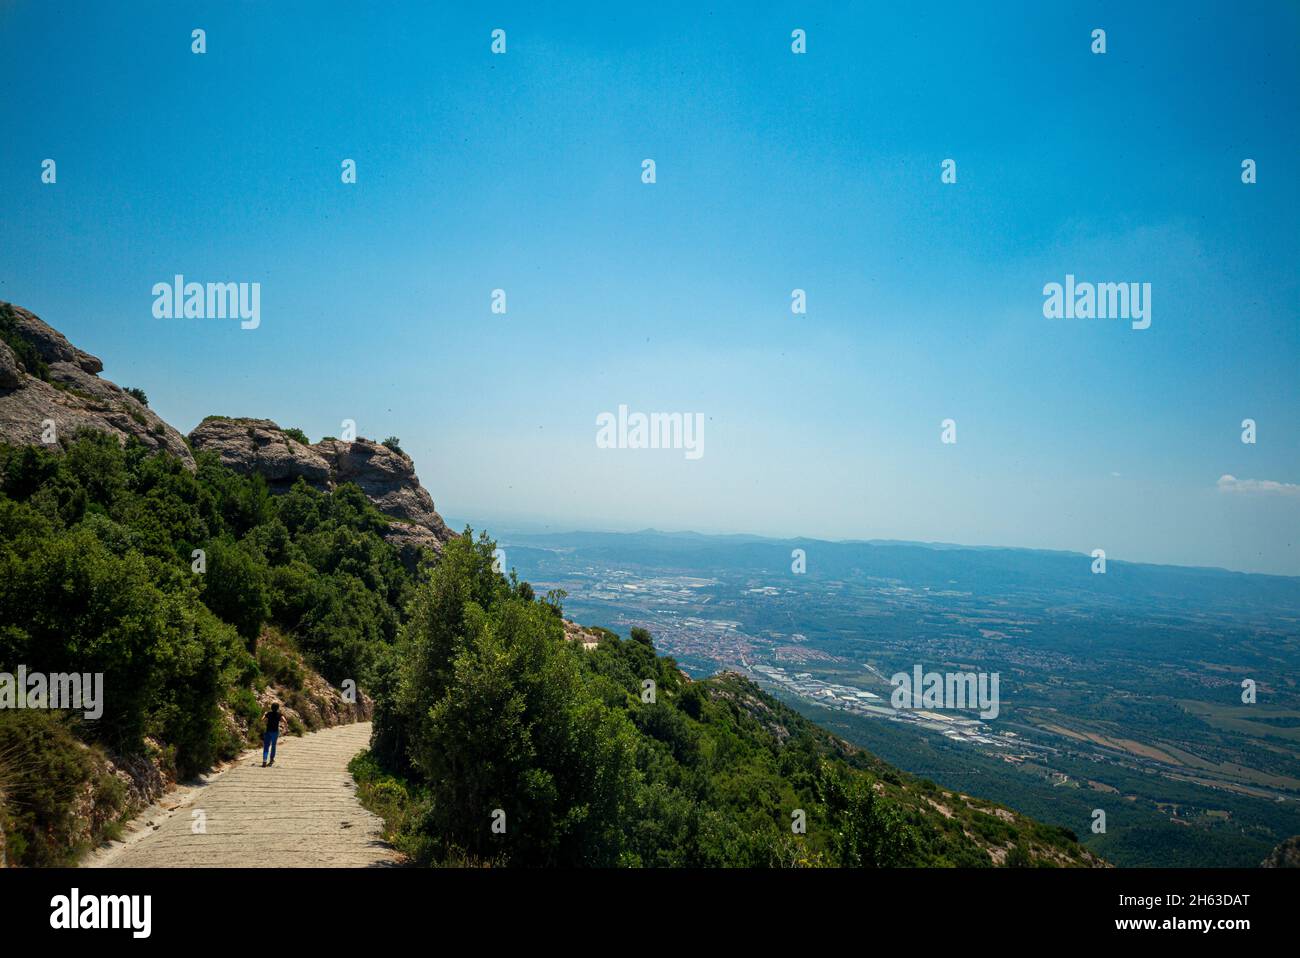 Die Berge von montserrat in barcelona, spanien. montserrat ist ein spanisch geformter Berg, der antoni gaudi beeinflusste, seine Kunstwerke zu machen. Stockfoto